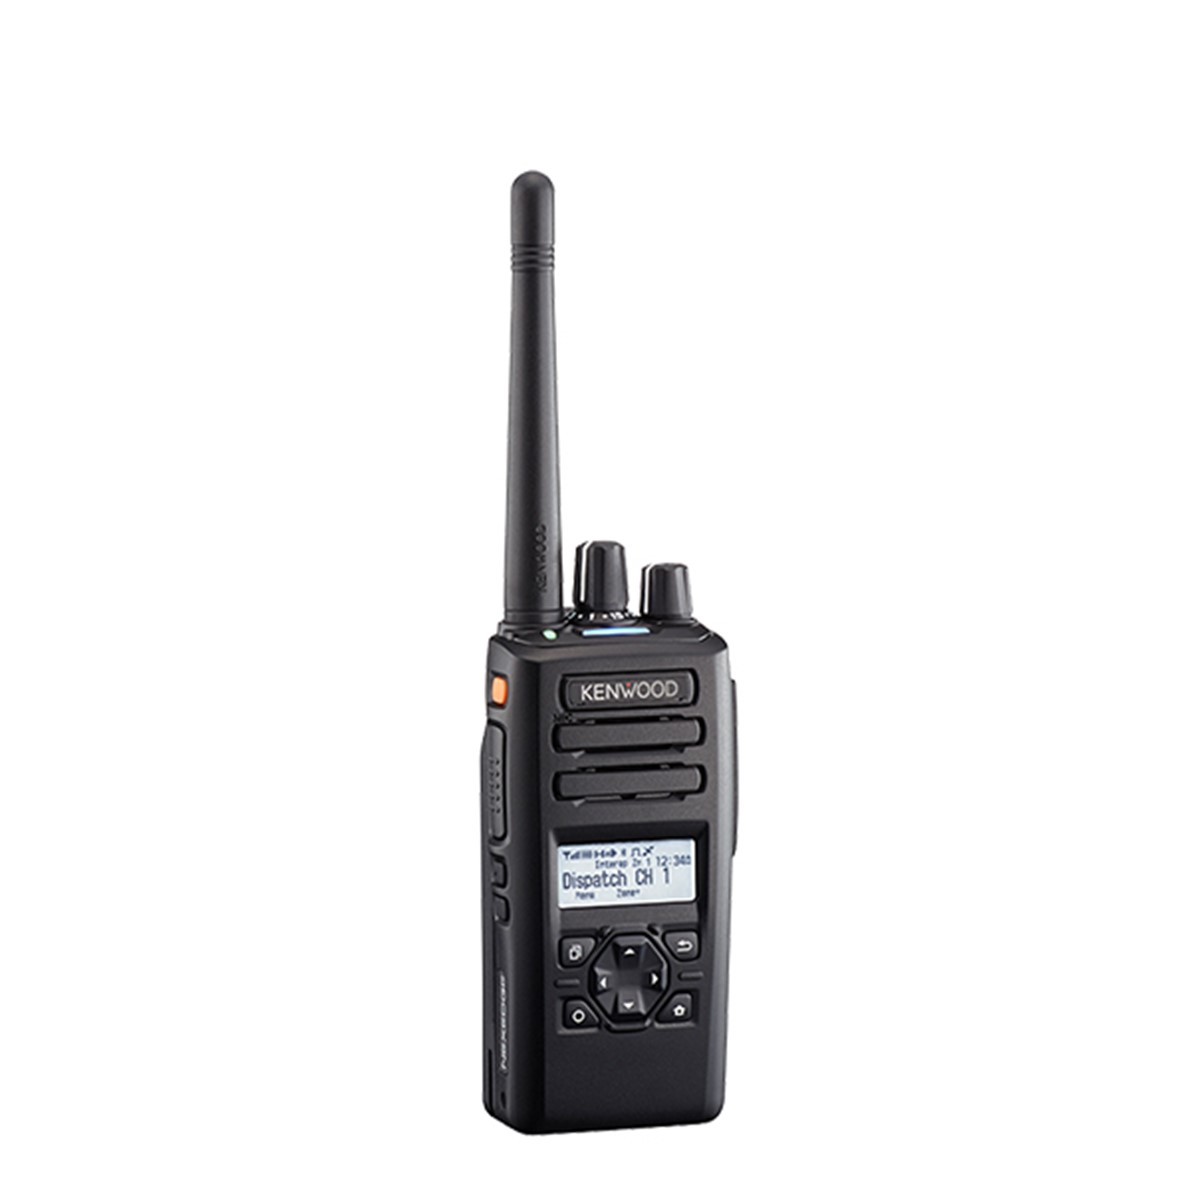 Radio KENWOOD NX-3300 Digital UHF 400-520 MHz con pantalla y teclado reducido